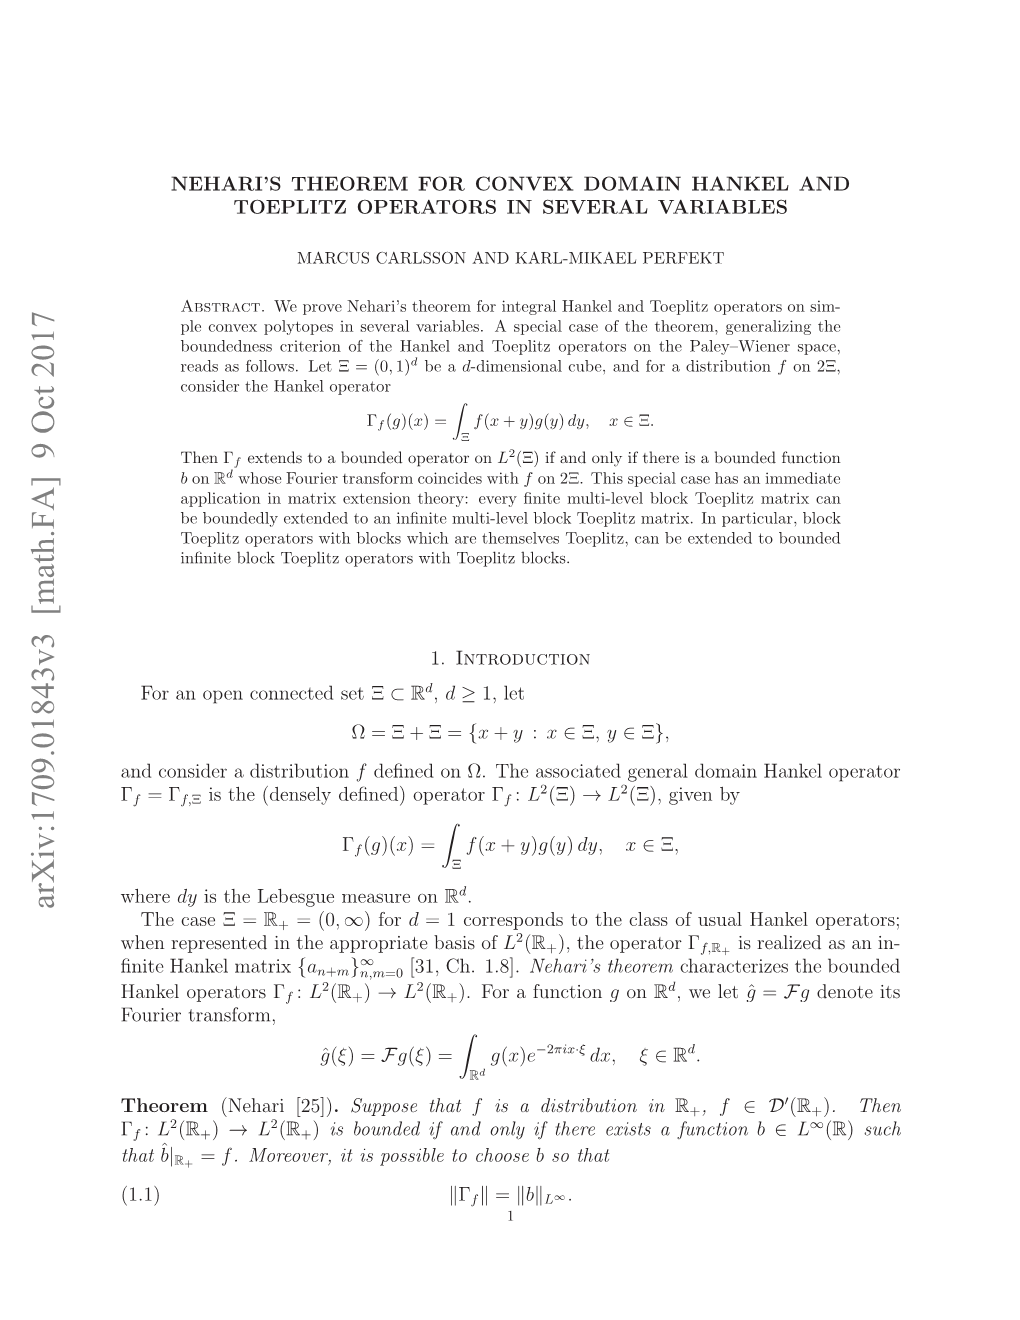 Nehari's Theorem for Convex Domain Hankel and Toeplitz Operators In